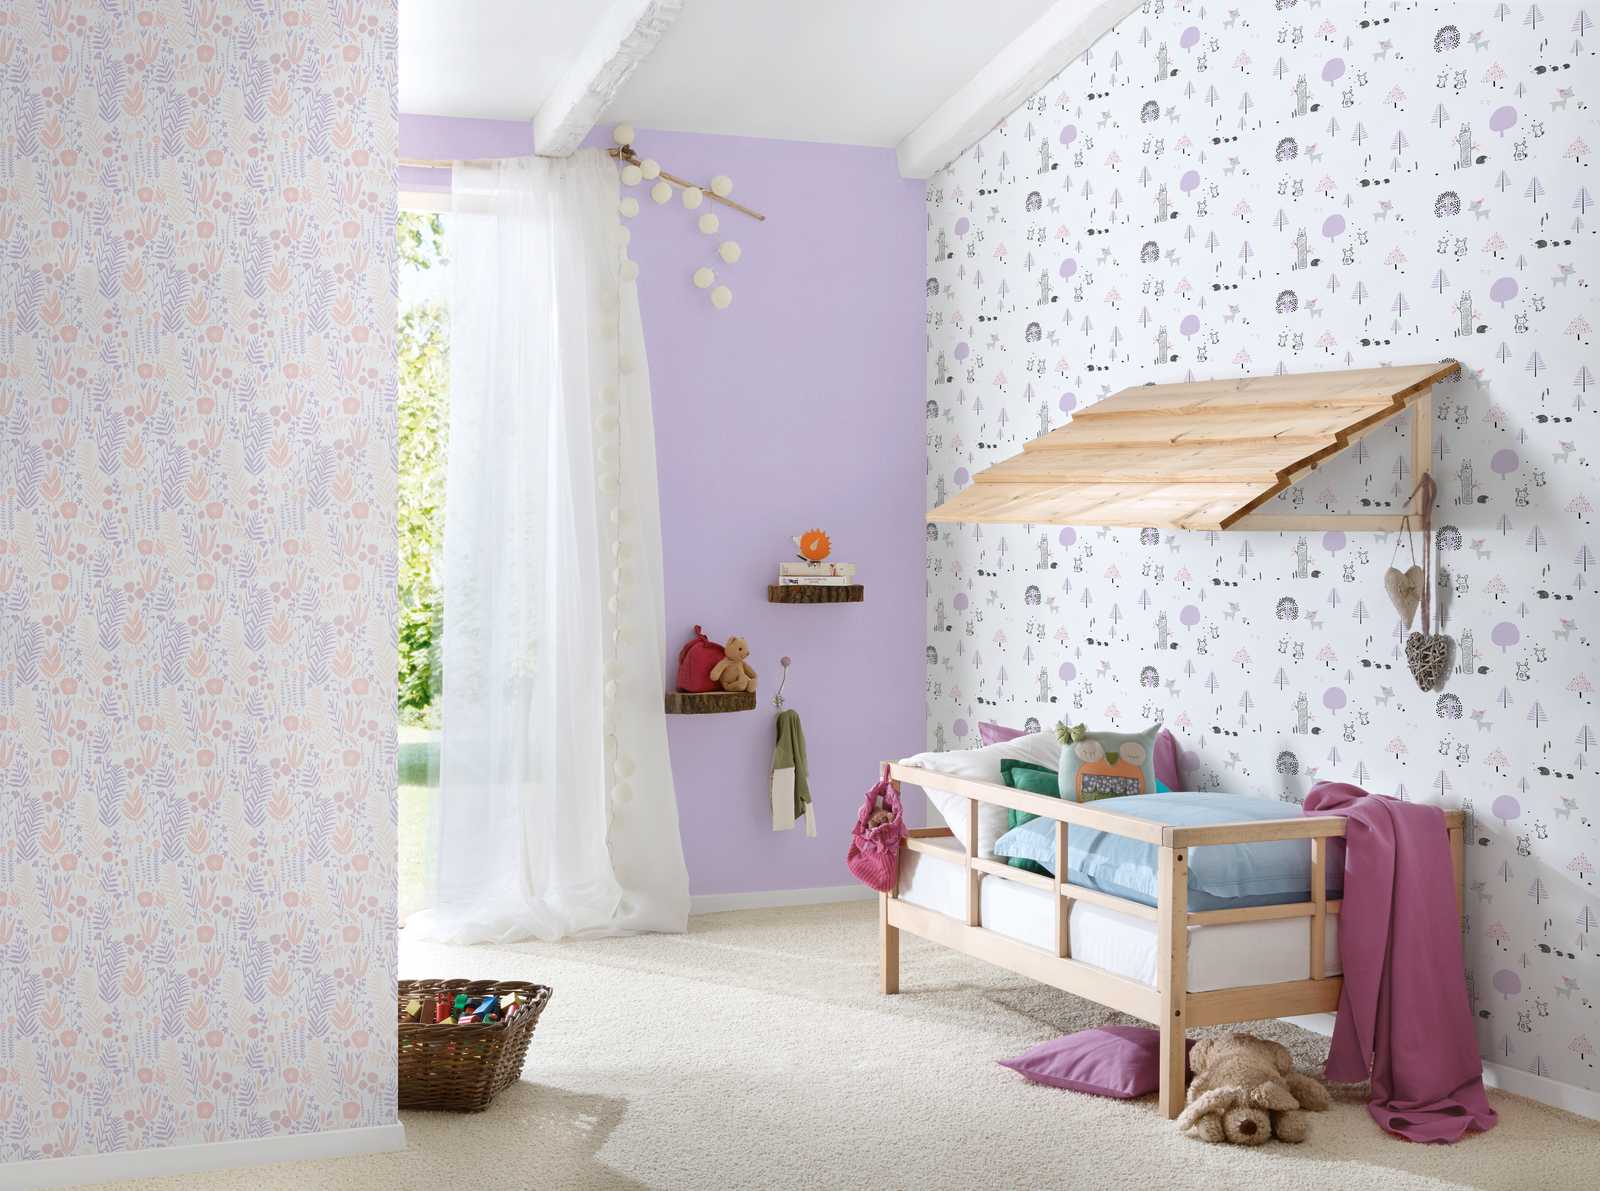             Meisjeskamer behang planten - paars, roze, wit
        